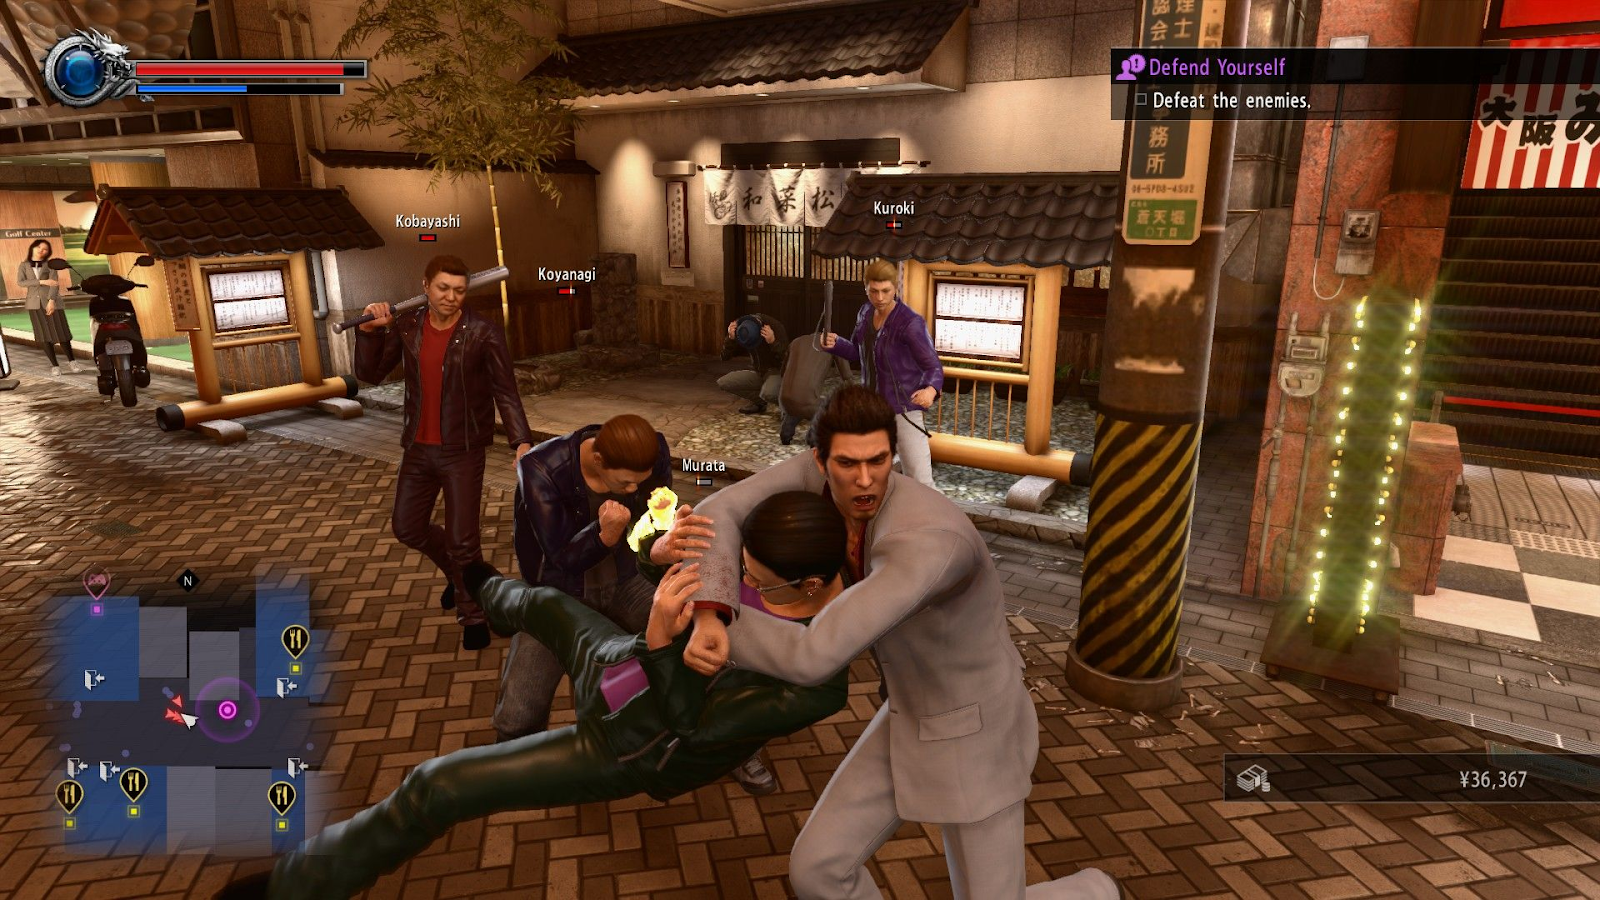 Fighting in Yakuza